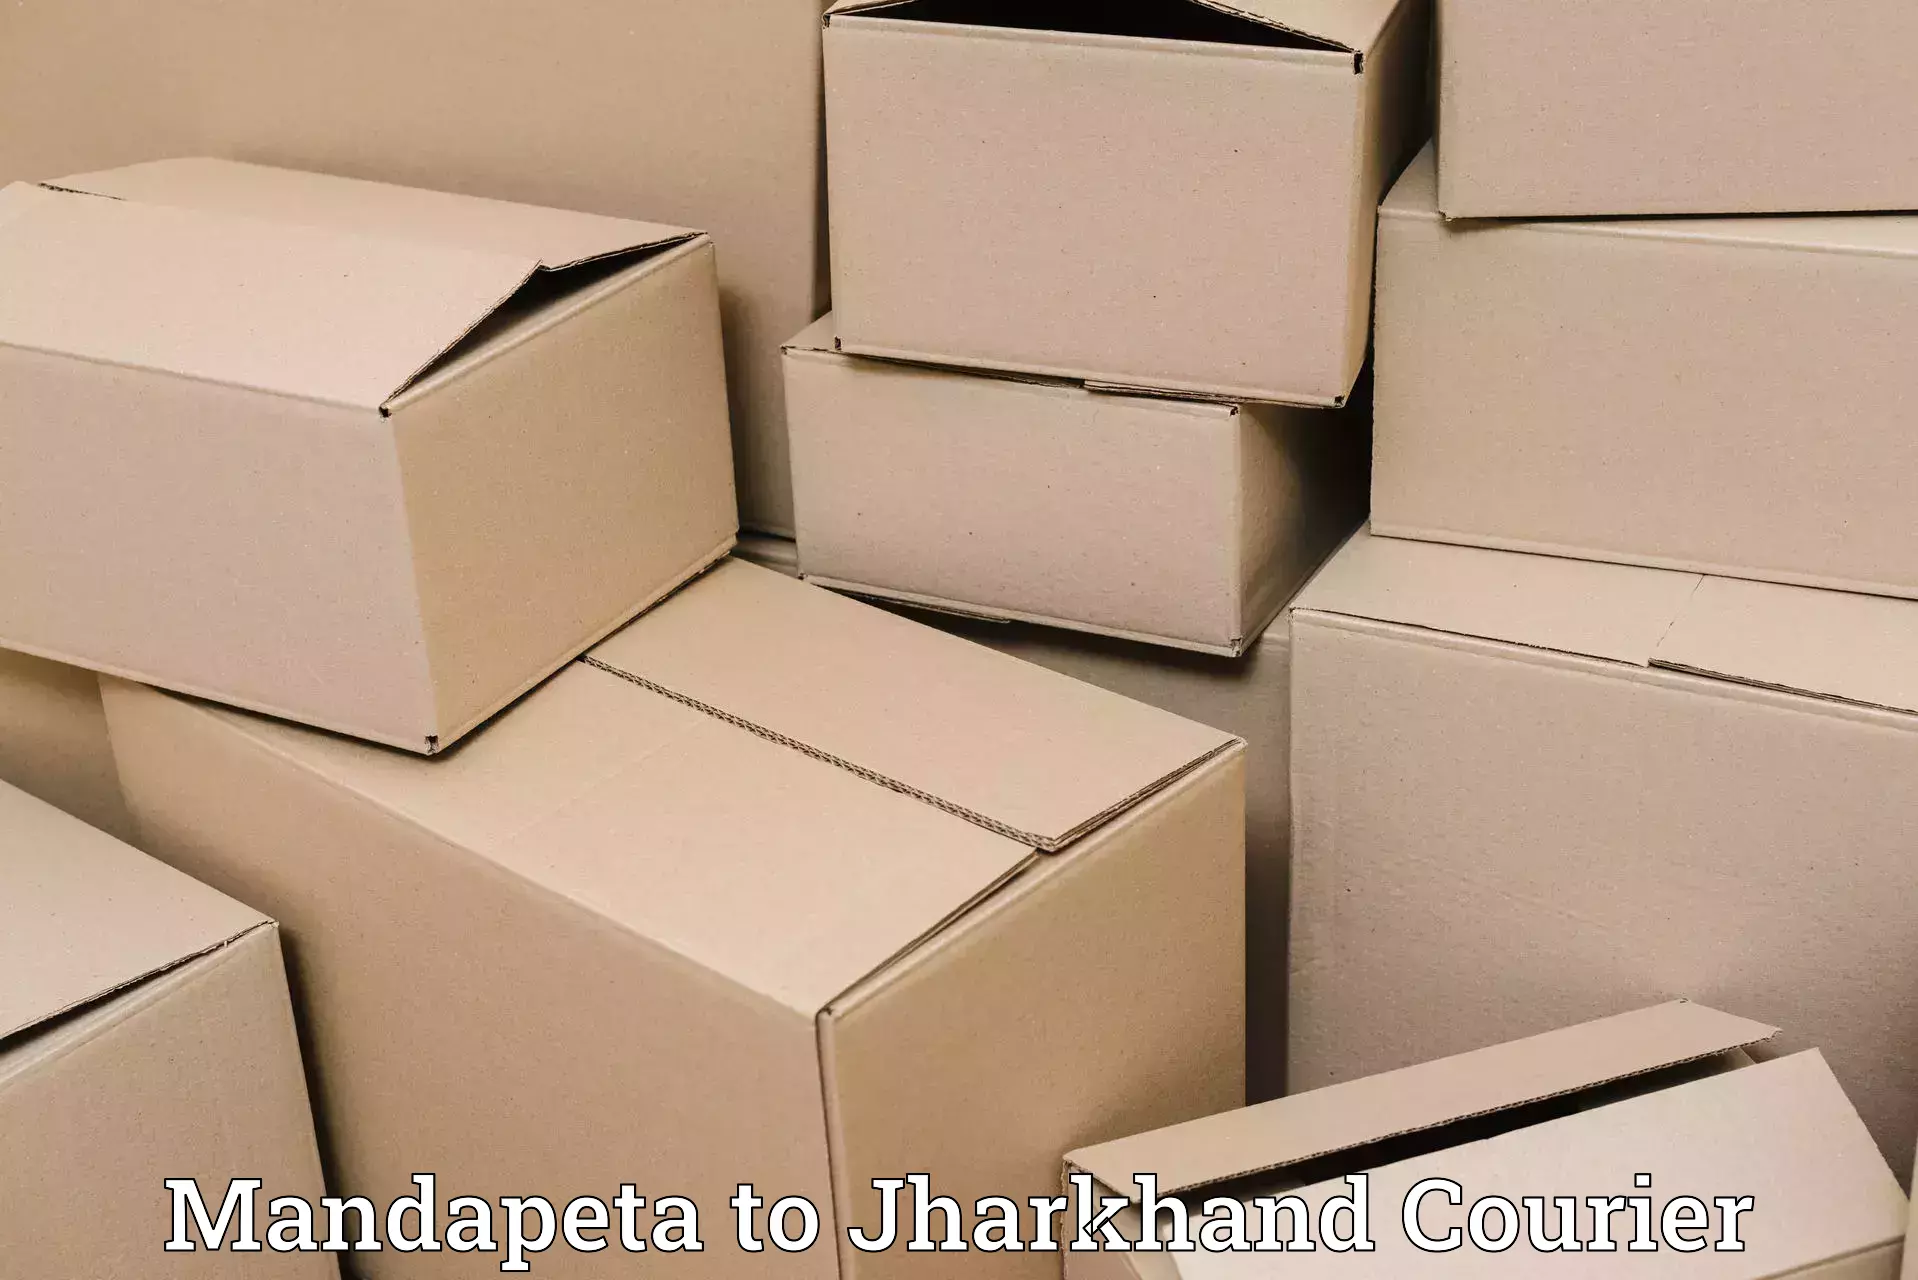 Global shipping networks in Mandapeta to Barharwa